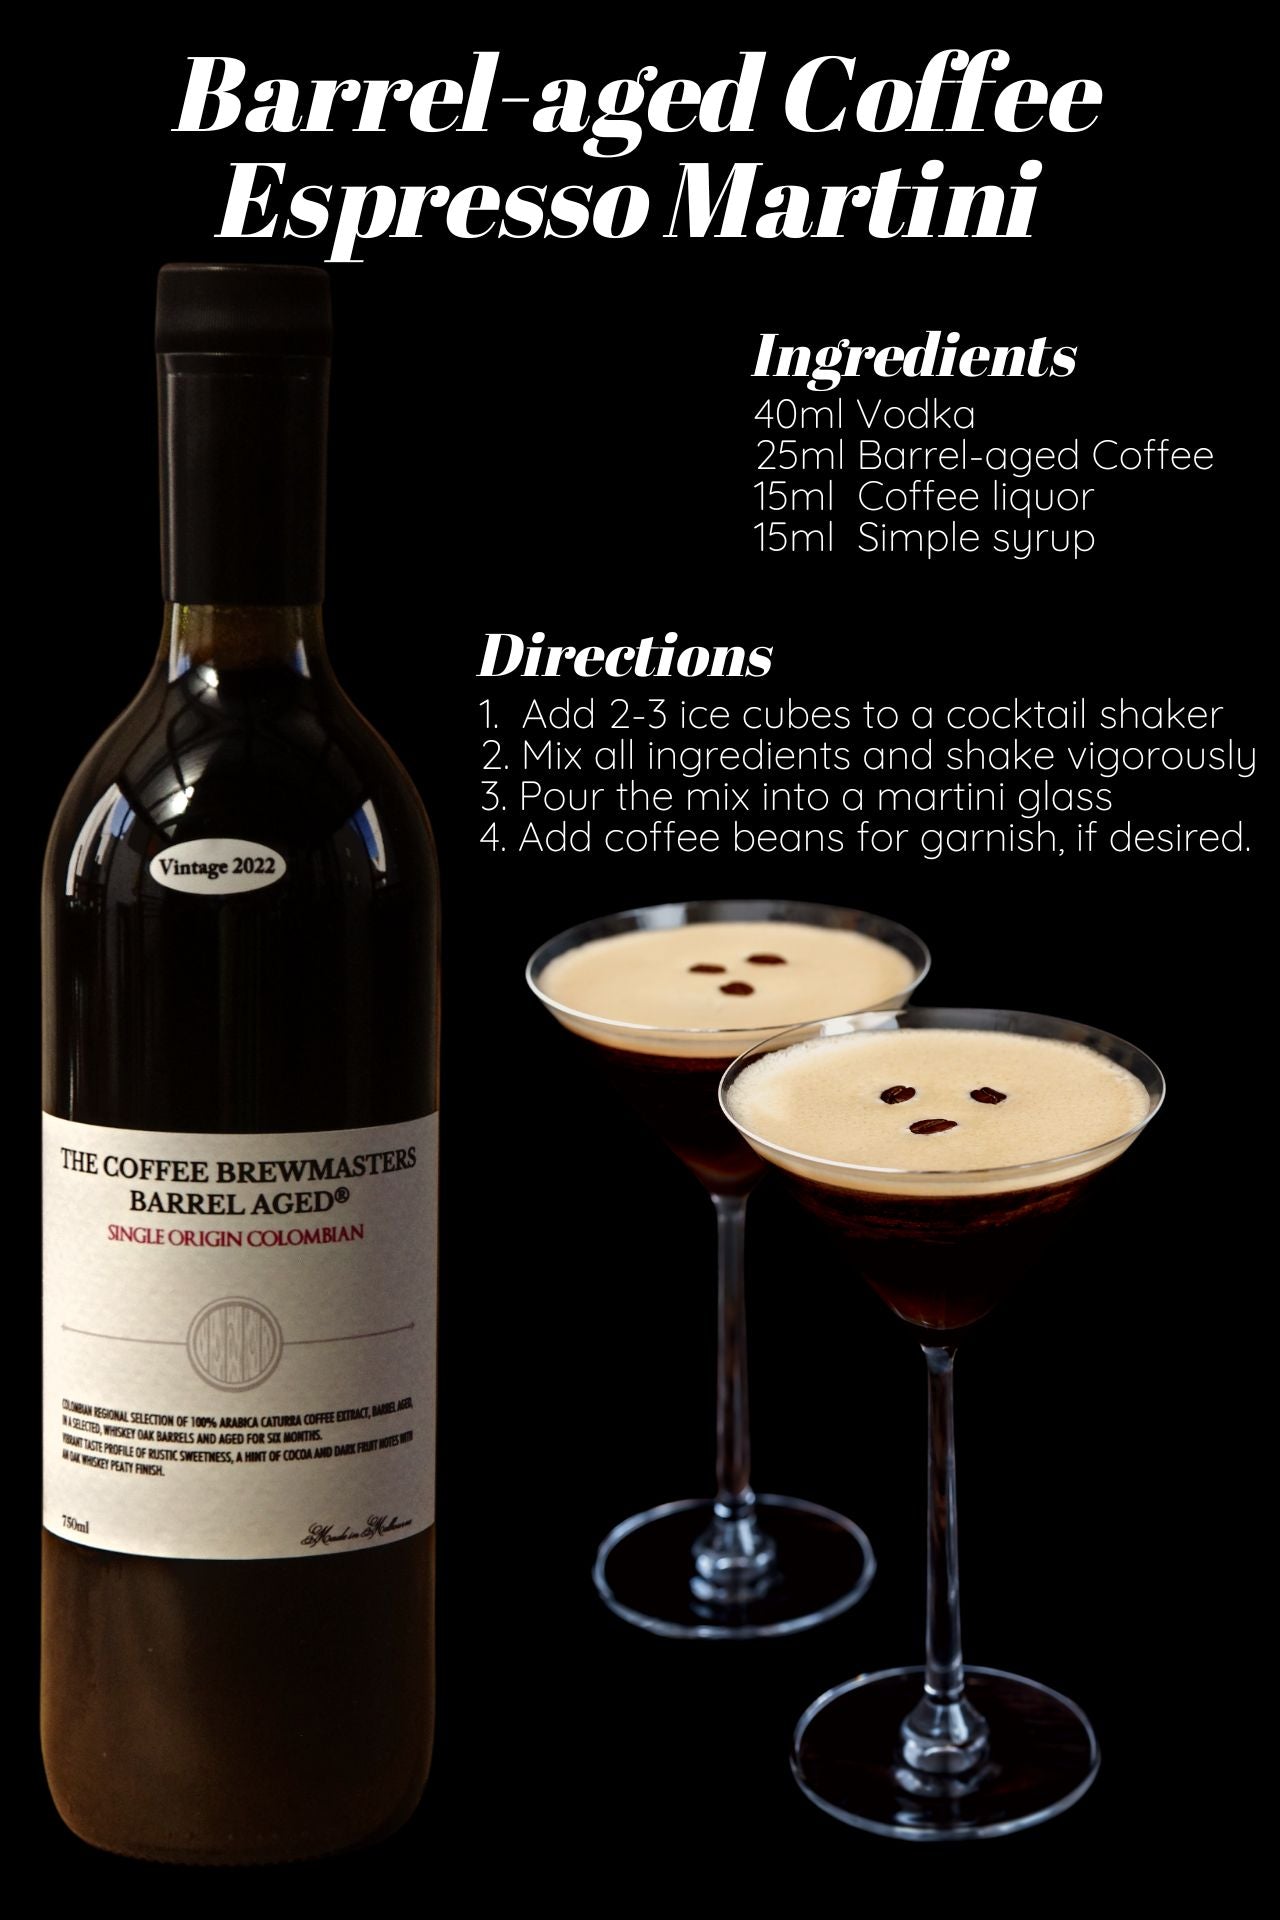 espresso martini recipe with barrel aged coffee. single origin colombian espresso coffee.